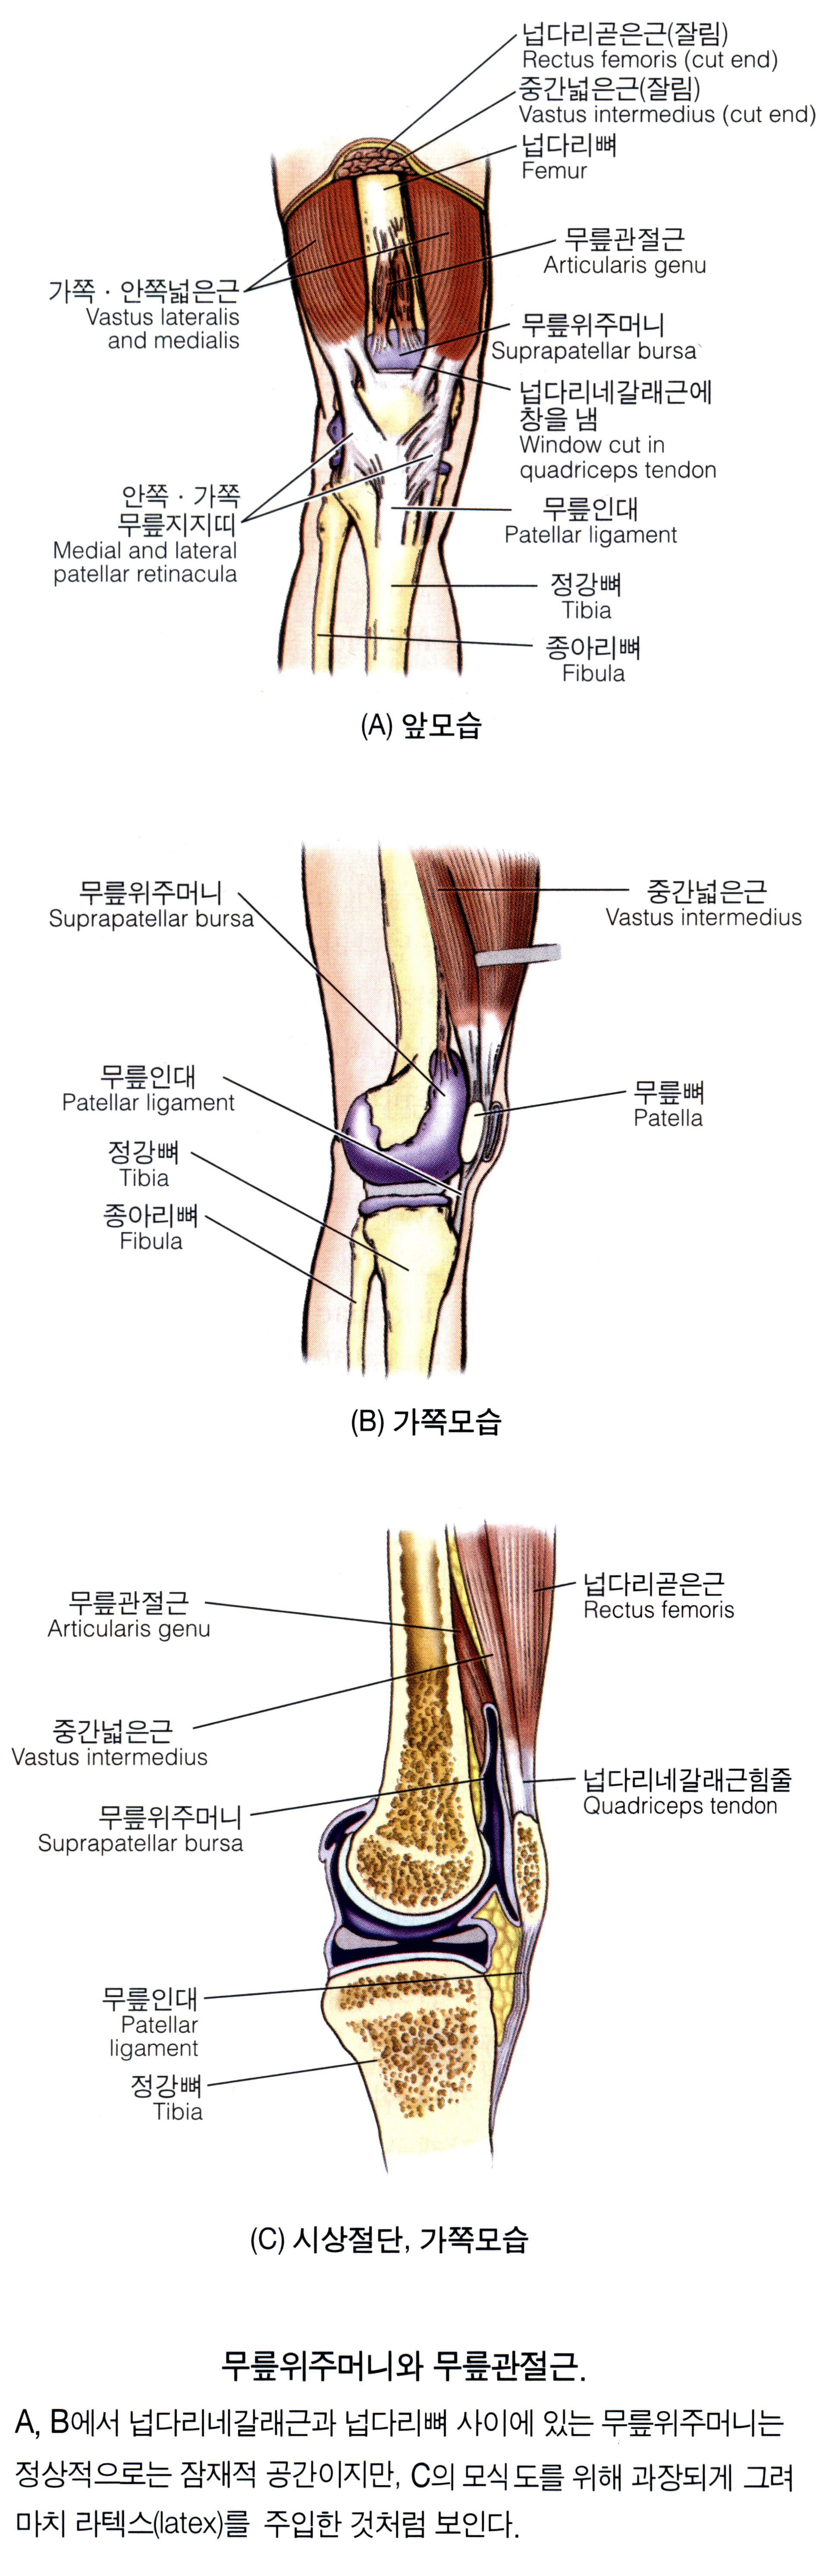 넙다리(대퇴)의 근육 18 - Articularis genus 무릎관절근 슬관절근膝關節筋 : 네이버 블로그